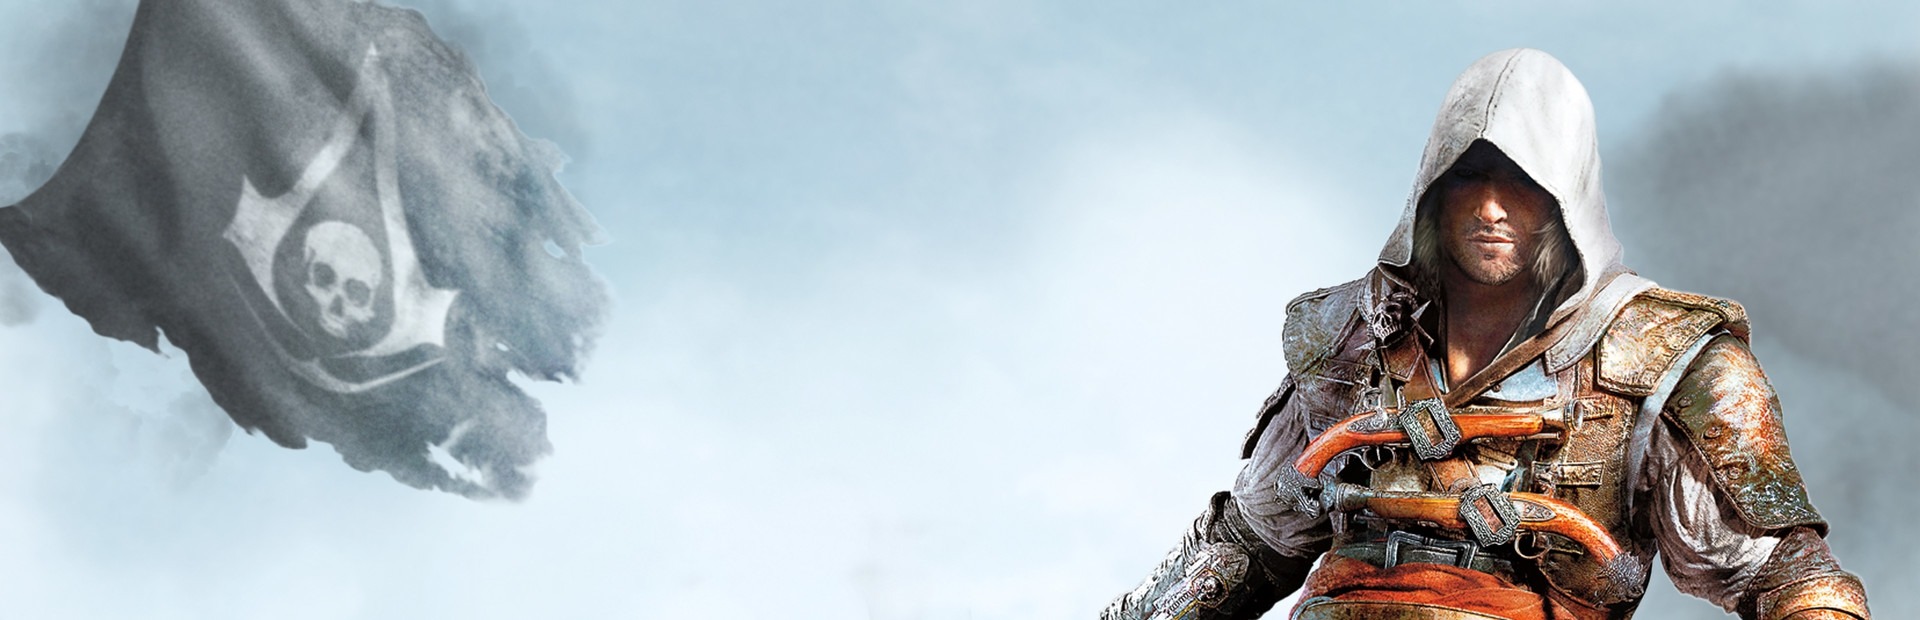 Сохранение ассасин 2. Баннер ассасин Крид. Assassins Creed 4 системные требования. Assassins Creed III обложка Steam. Assassins Creed Revelations обложка для Steam.